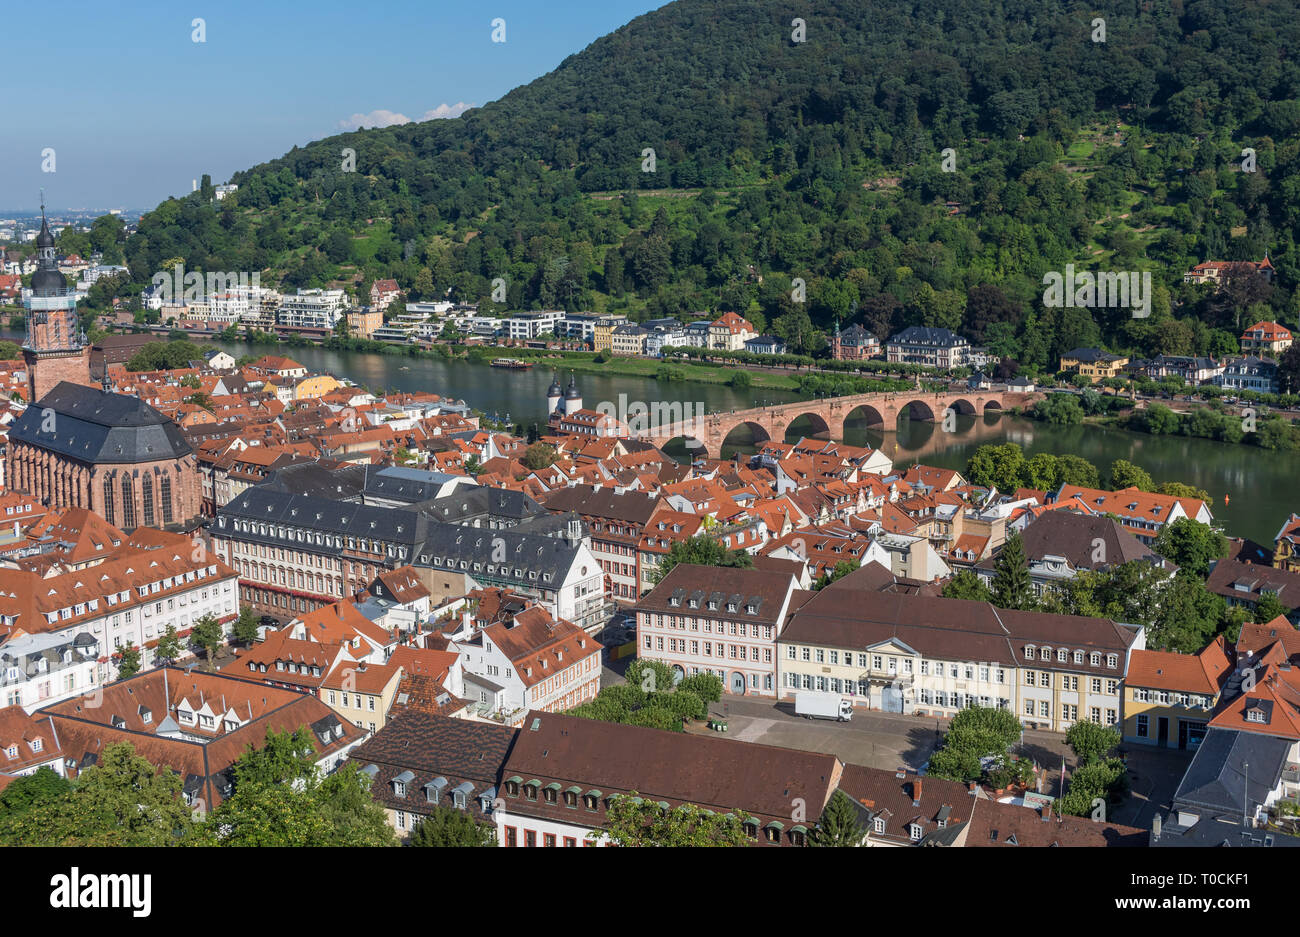 Heidelberg, Germania - una città universitaria e una popolare destinazione turistica, Heidelberg è una città bellissima che visualizza uno stile barocco Città Vecchia Foto Stock